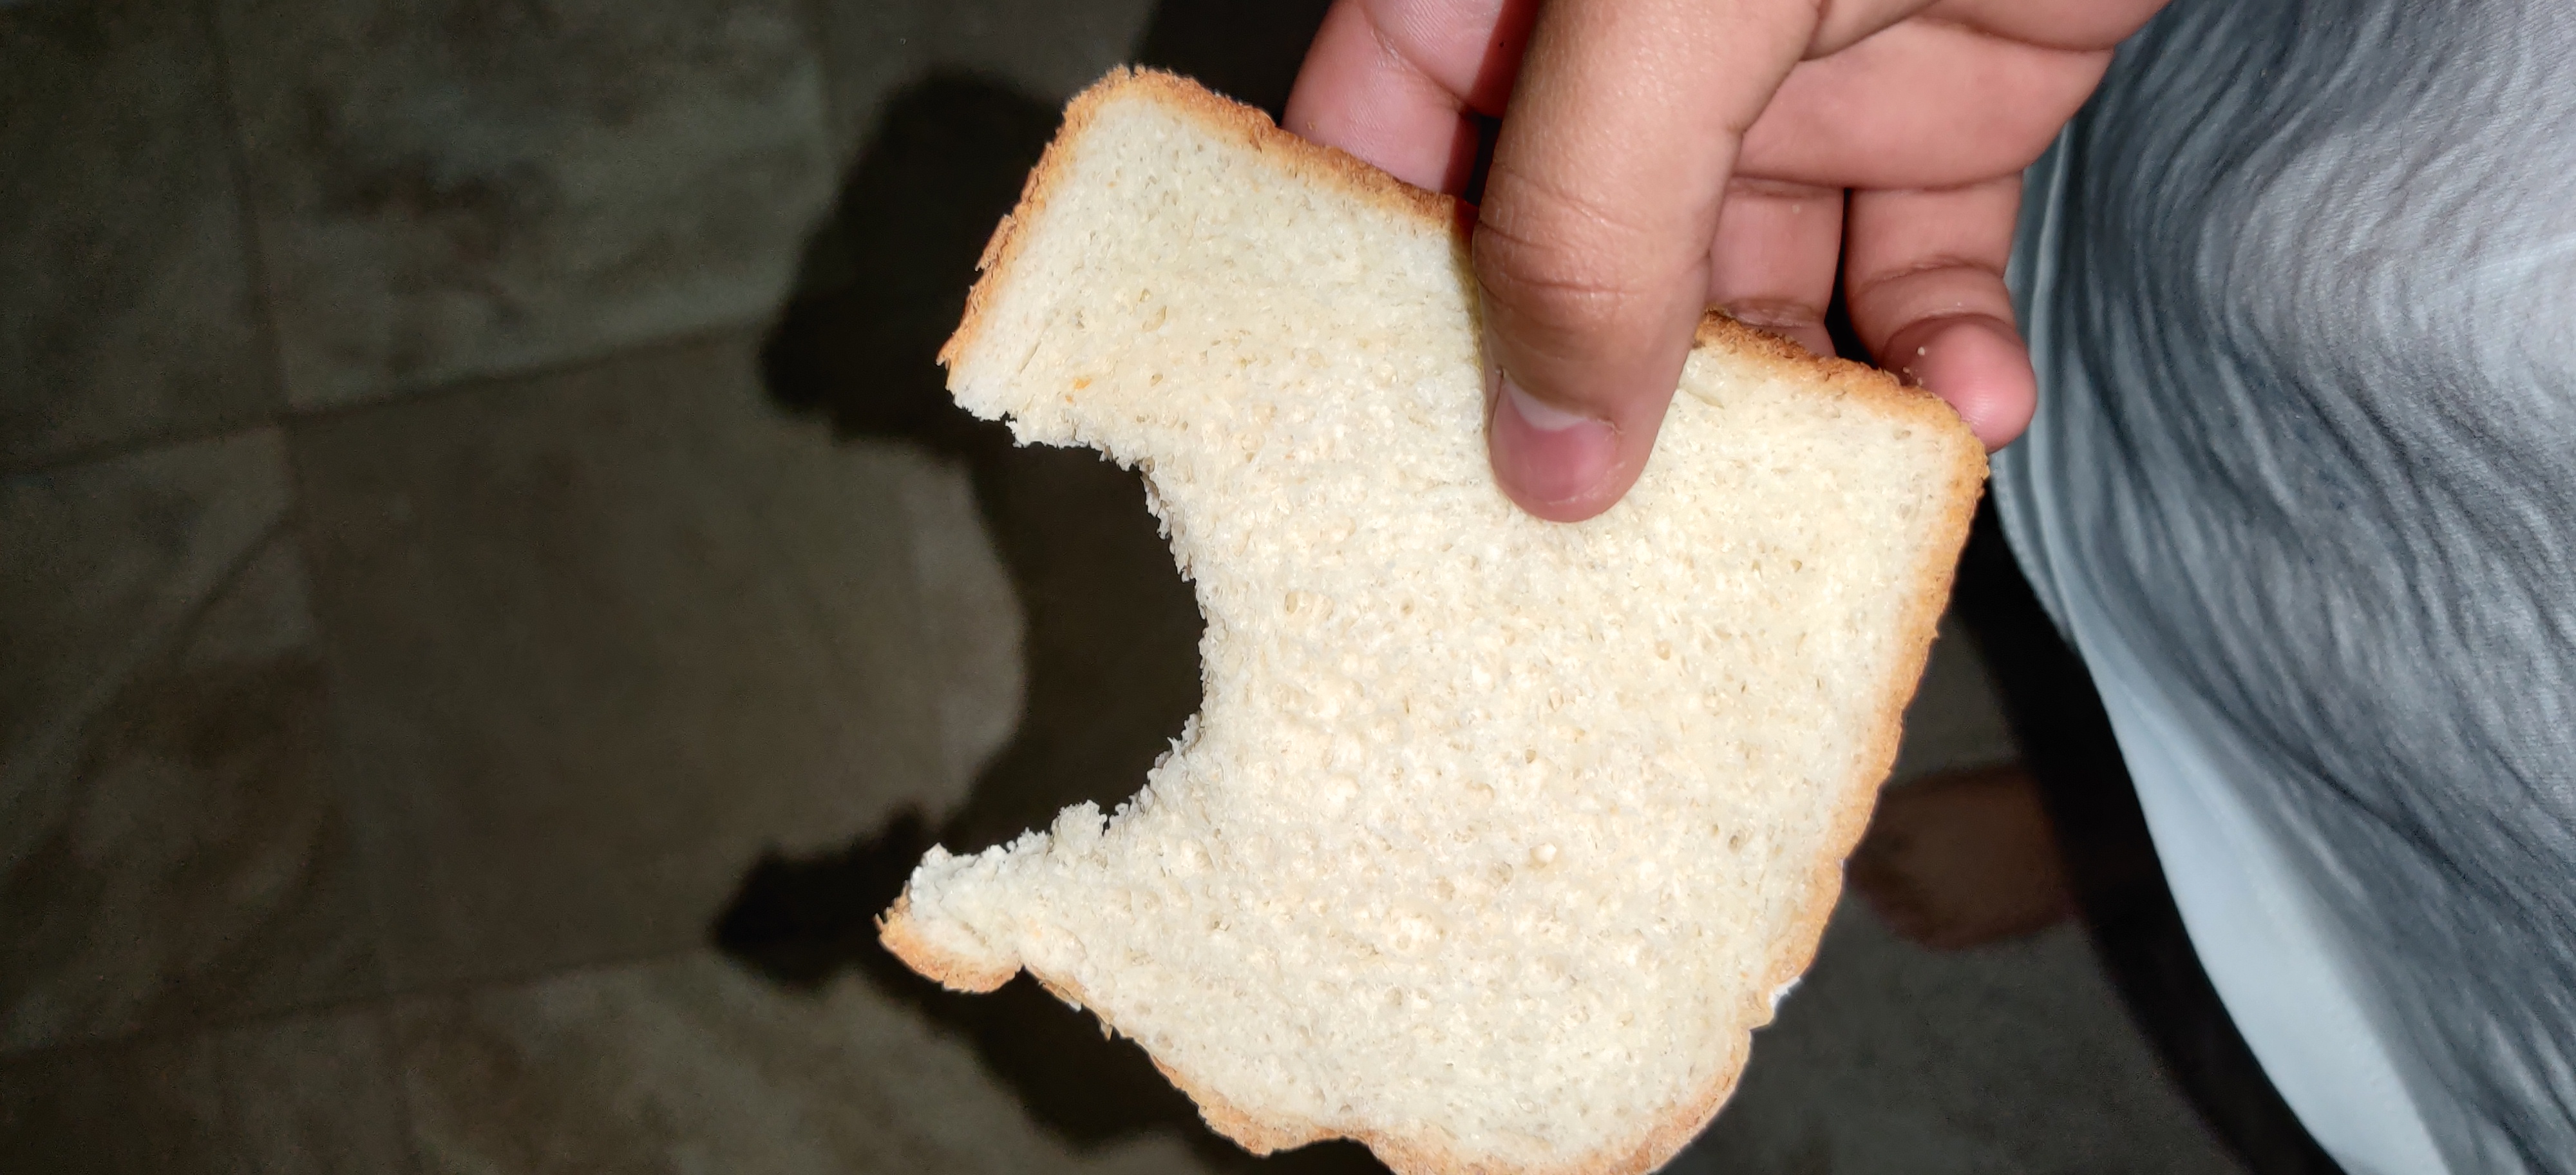 Random Pictures Of Bread I Have Fandom - cursed image bread roblox